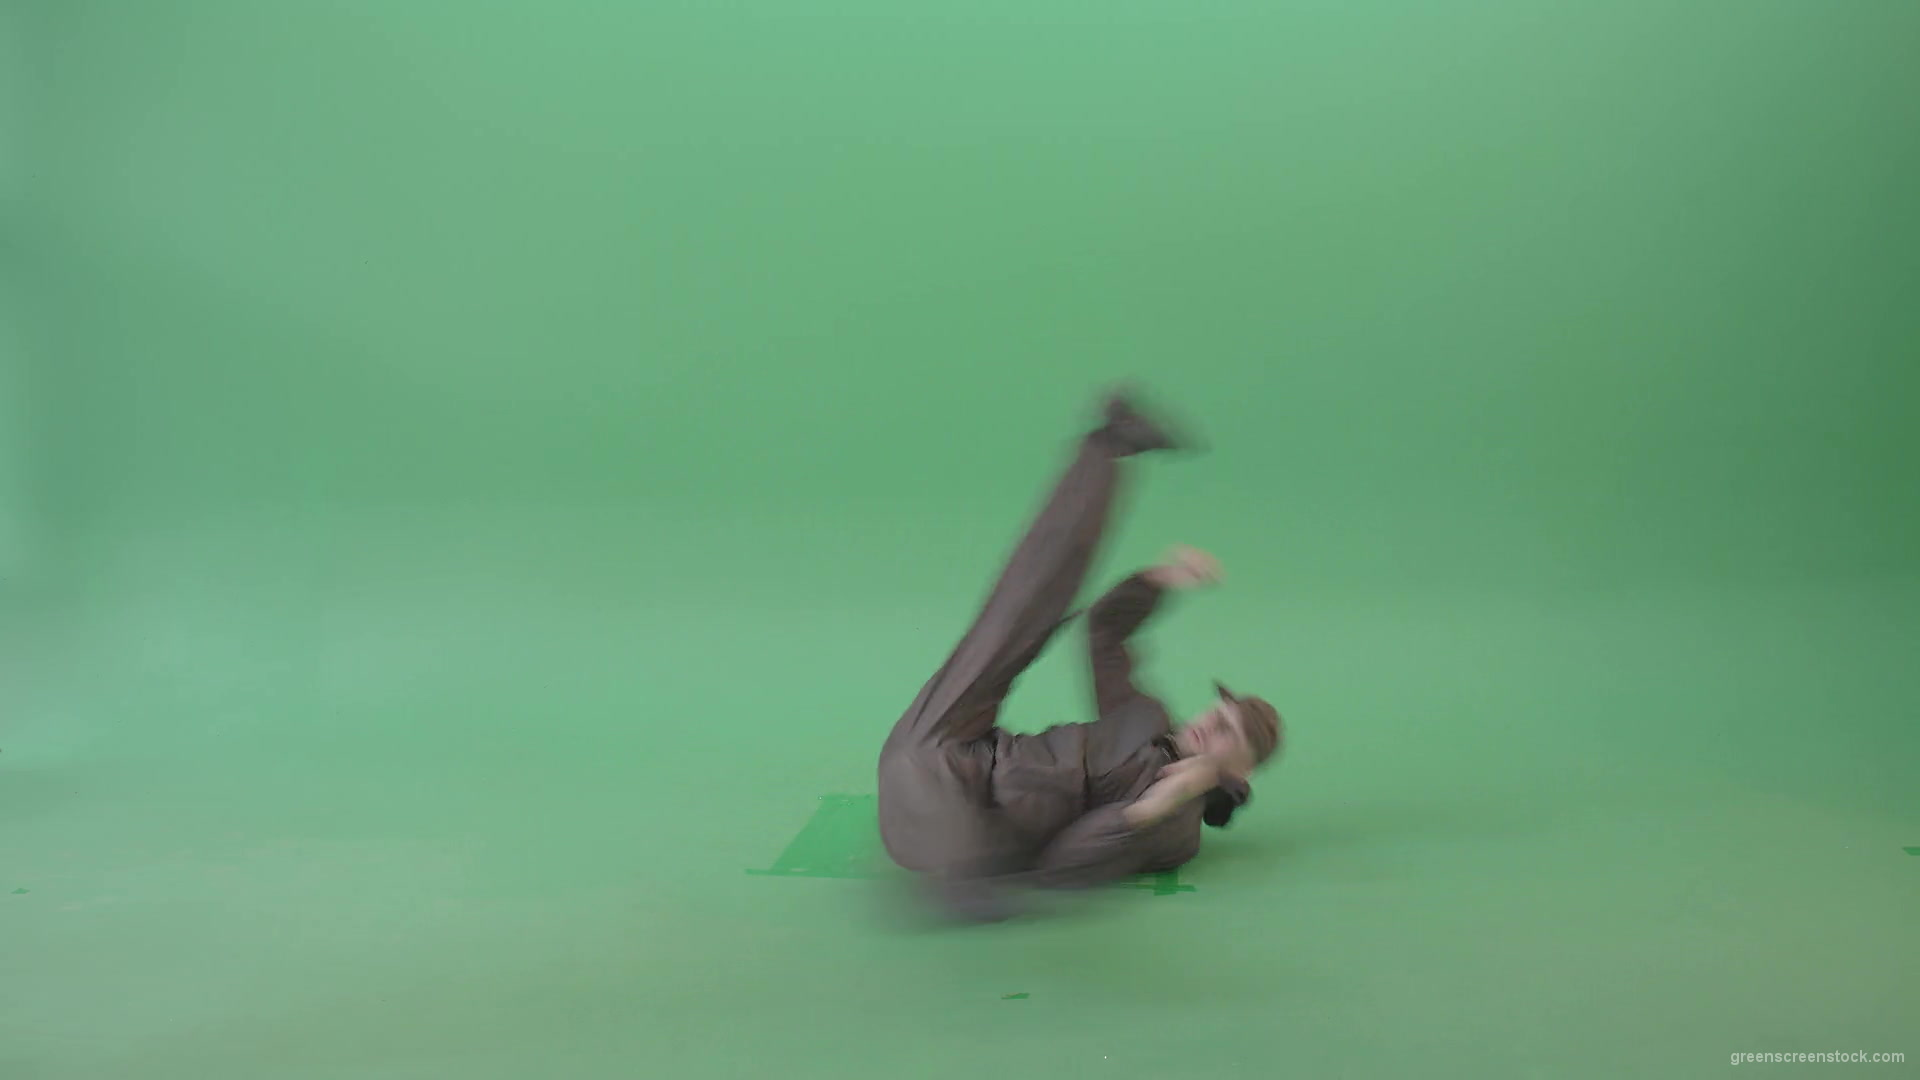 Man-dancing-breakdance-on-green-screen-4K-Video-Footage-1920_006 Green Screen Stock